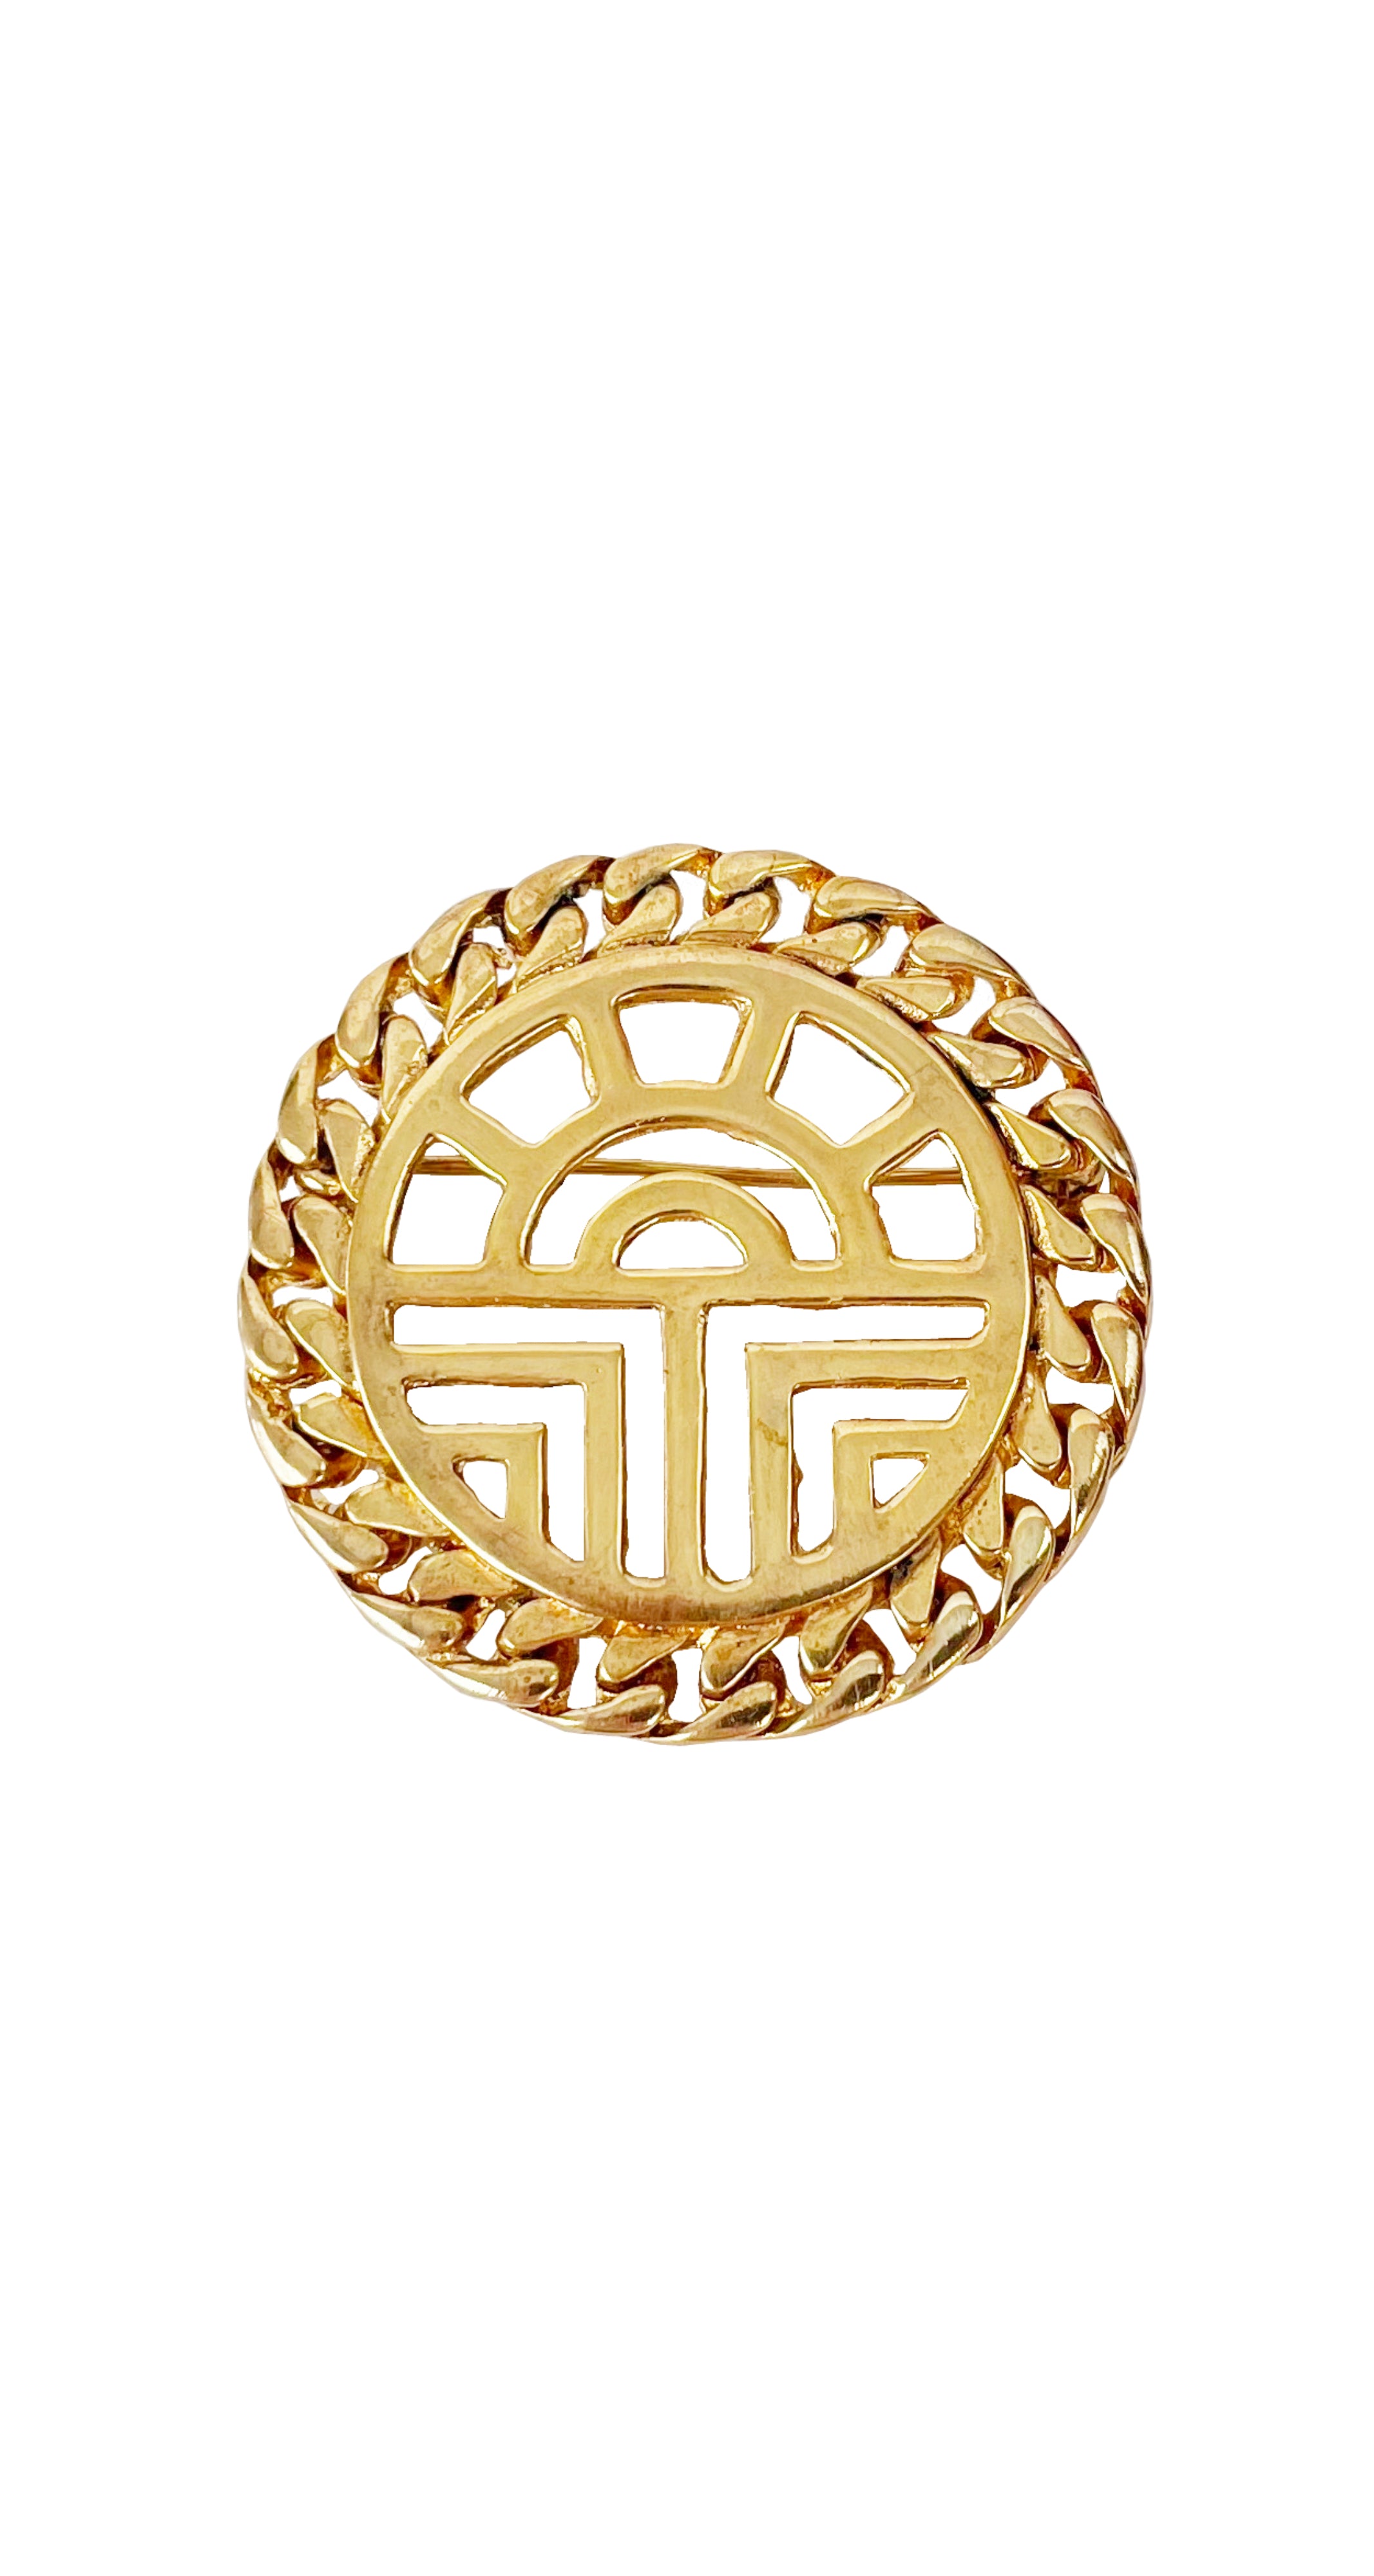 1990s Gold-Tone Logo Curb Chain Brooch